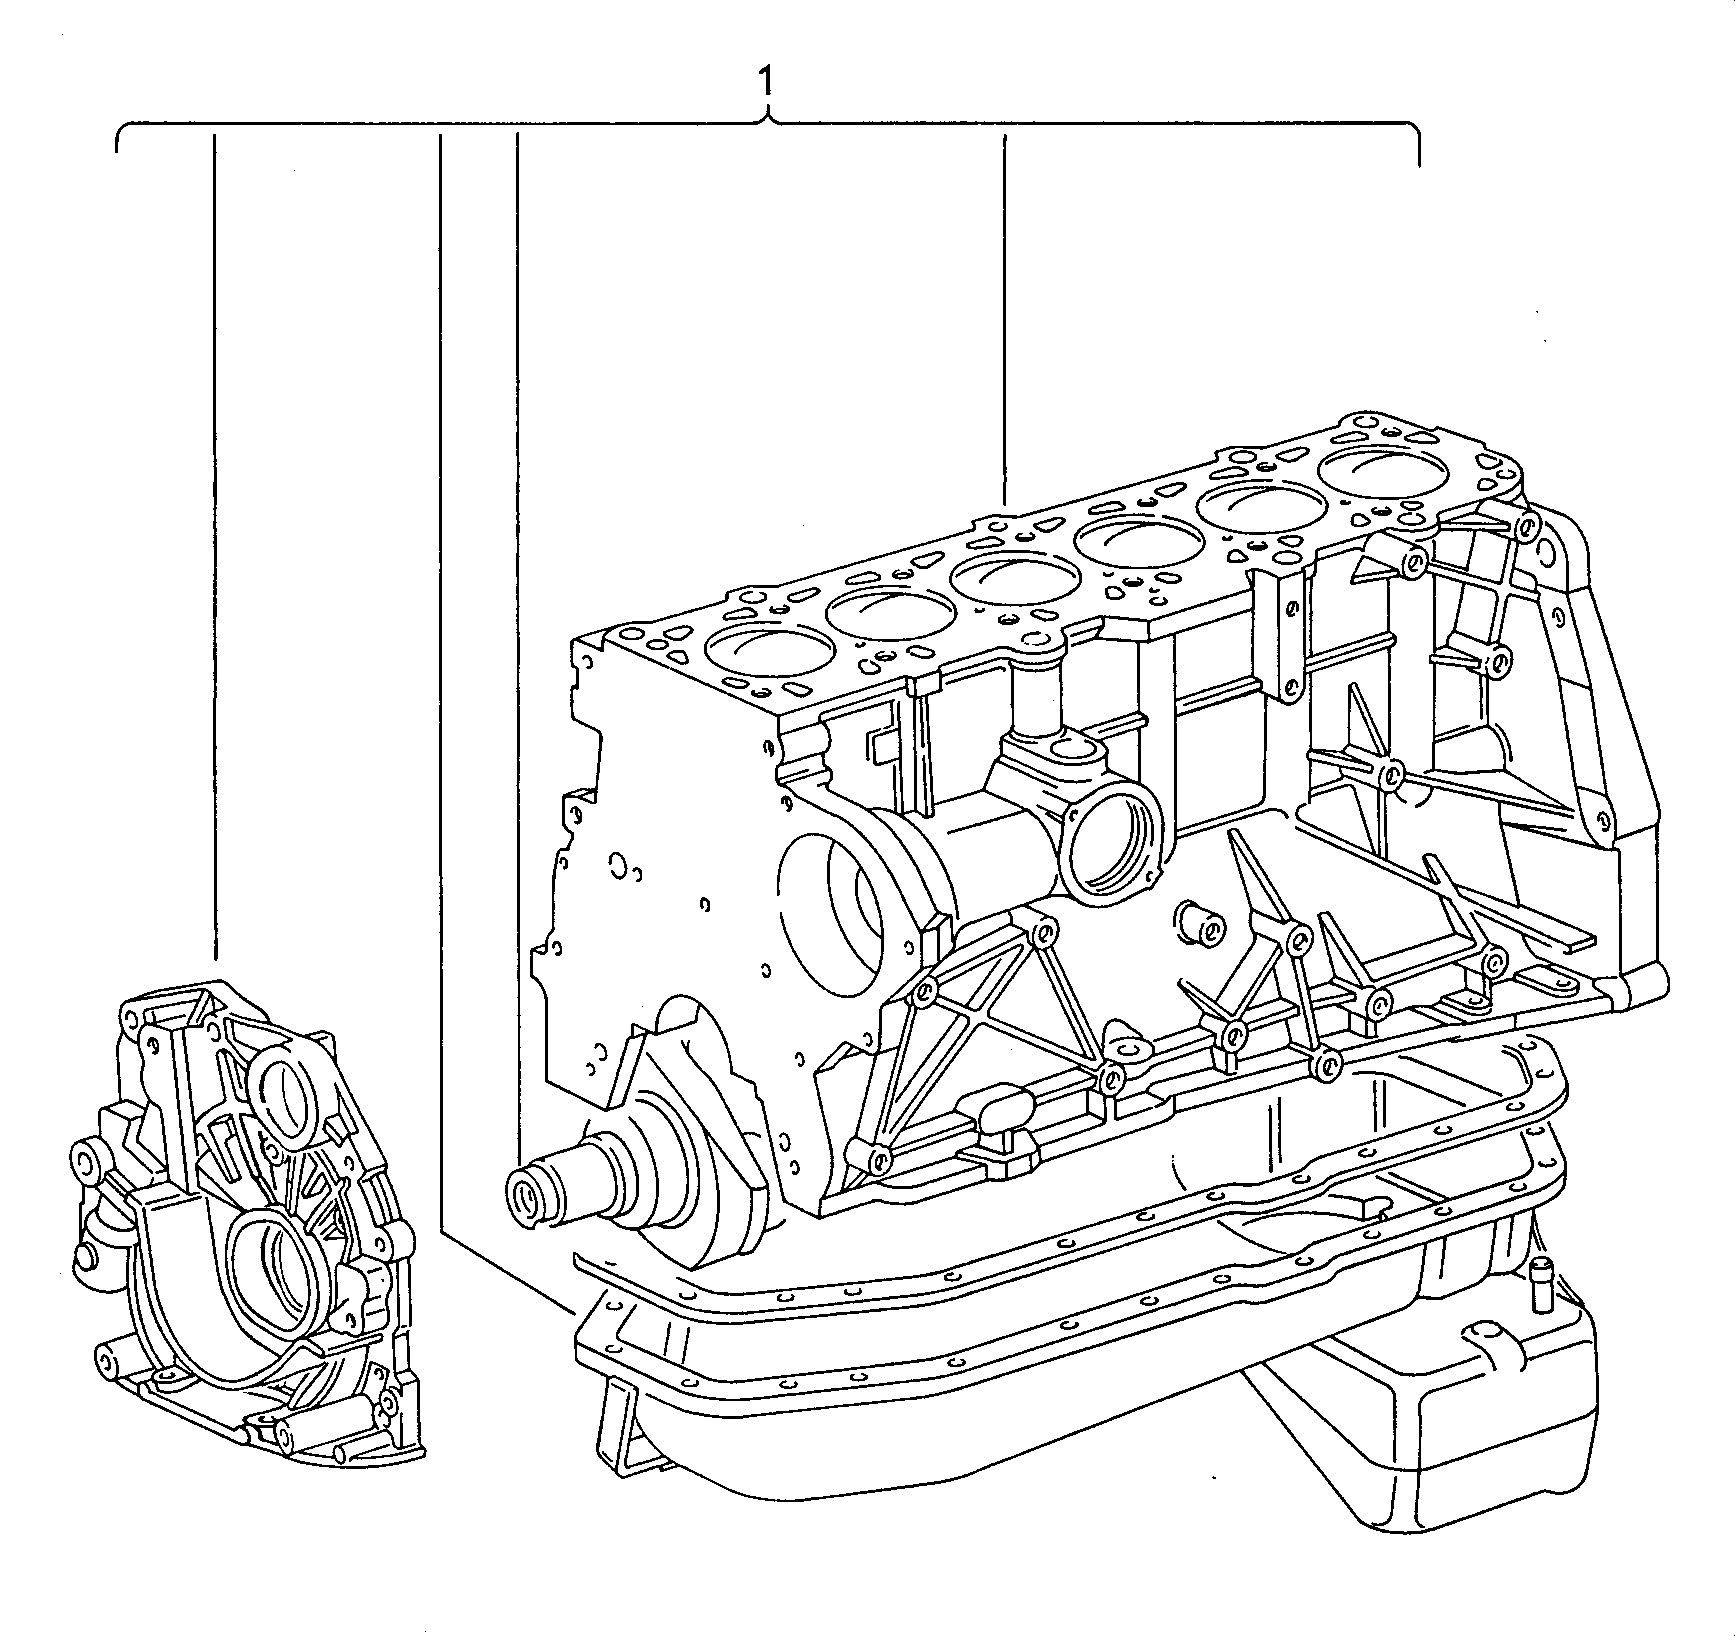 motor aligerado con ciguenal,<br>pistones,bomba y carter aceite  - LT, LT 4x4 - lt